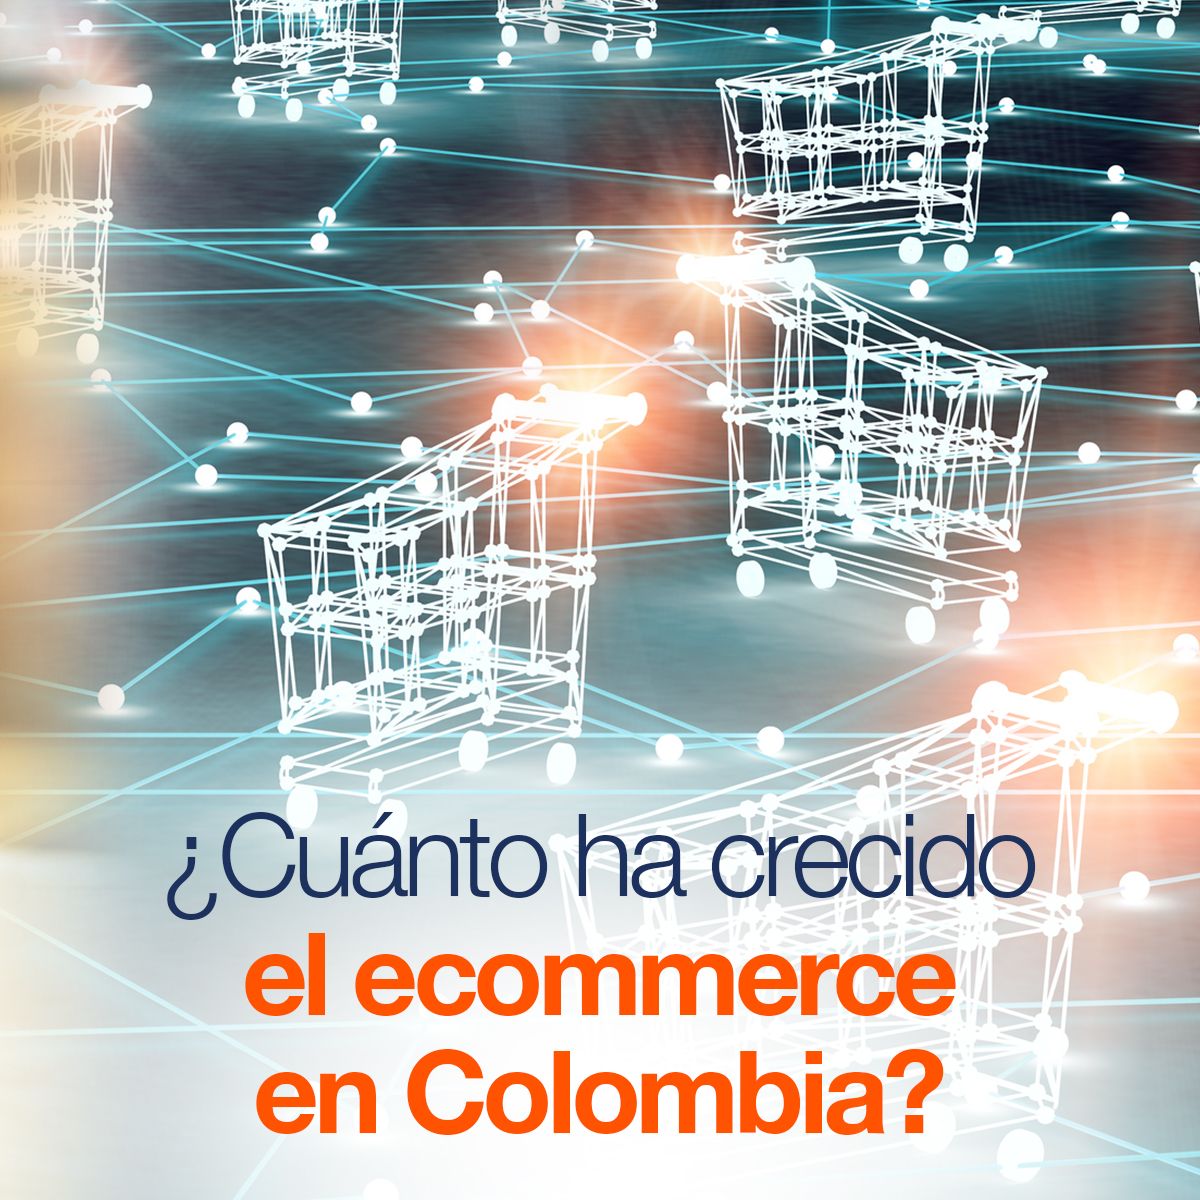 ¿Cuánto ha crecido el ecommerce en Colombia?